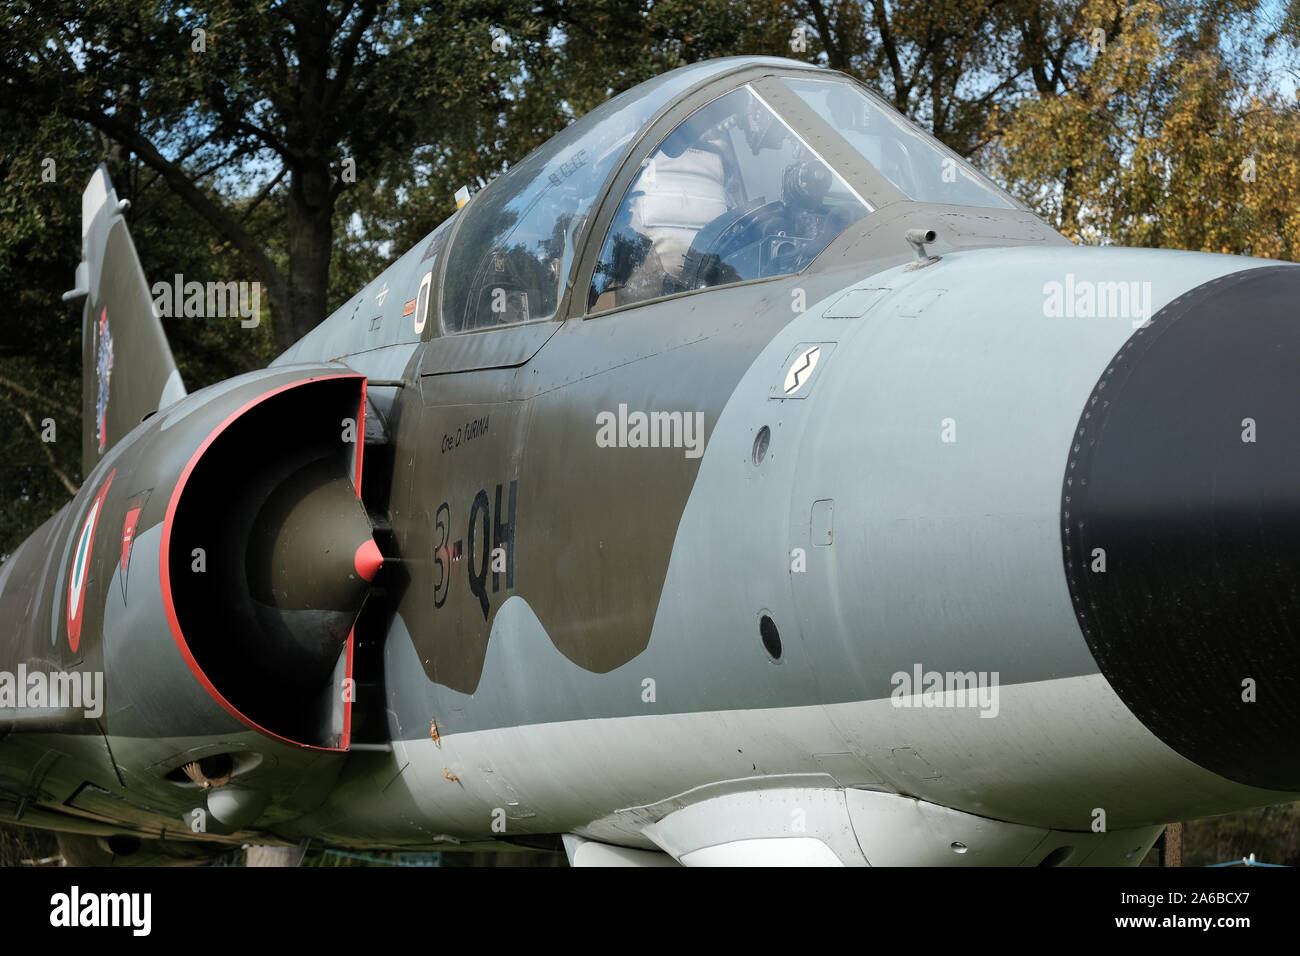 Dassault Mirage 3 cold war period jet fighter interceptor. Stock Photo